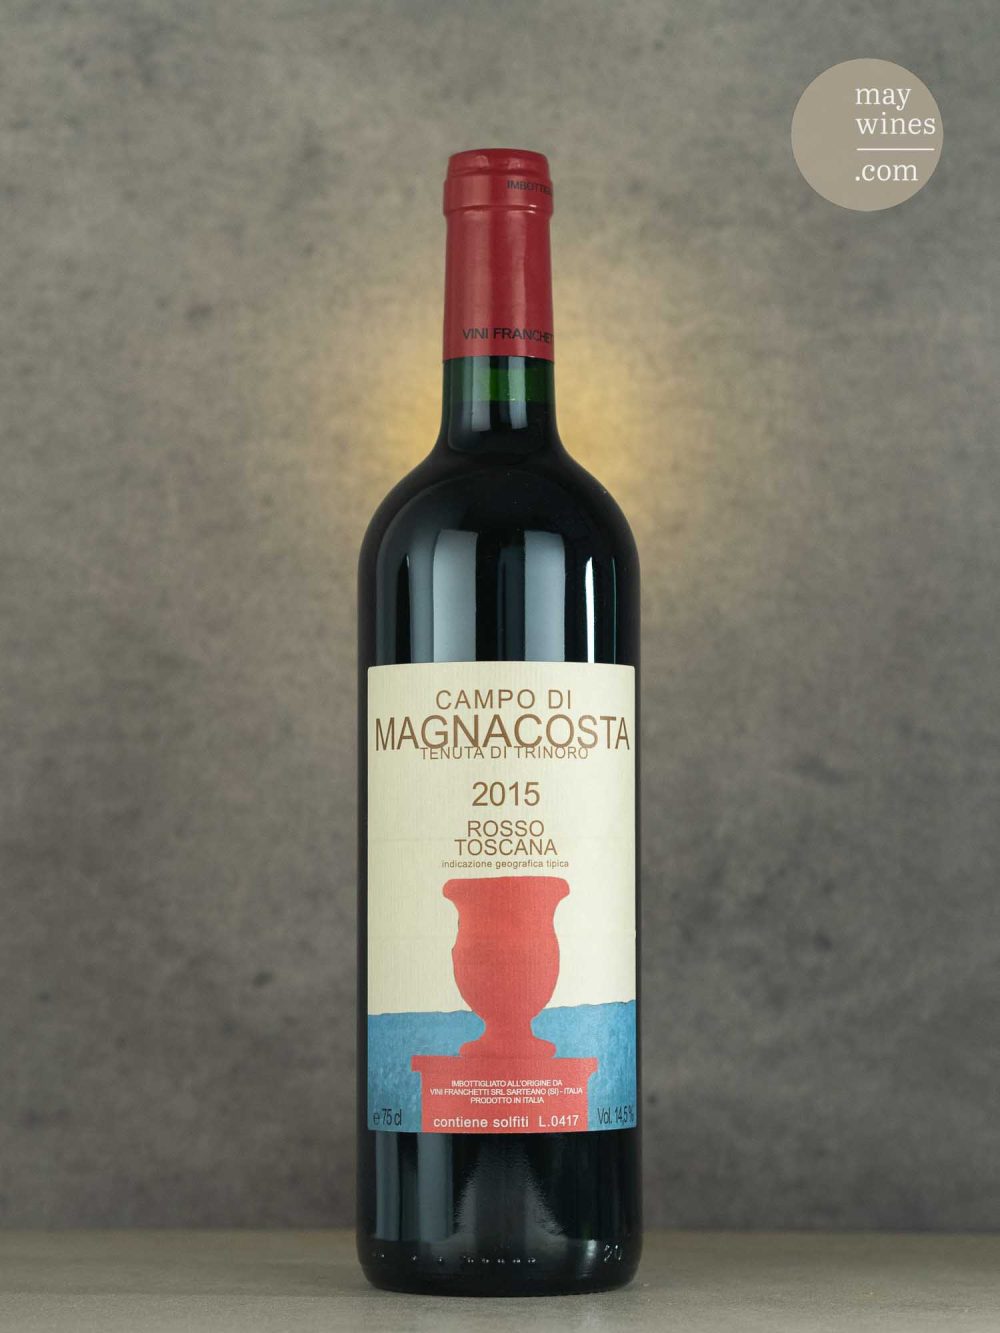 May Wines – Rotwein – 2015 Campo di Magnacosta - Tenuta di Trinoro